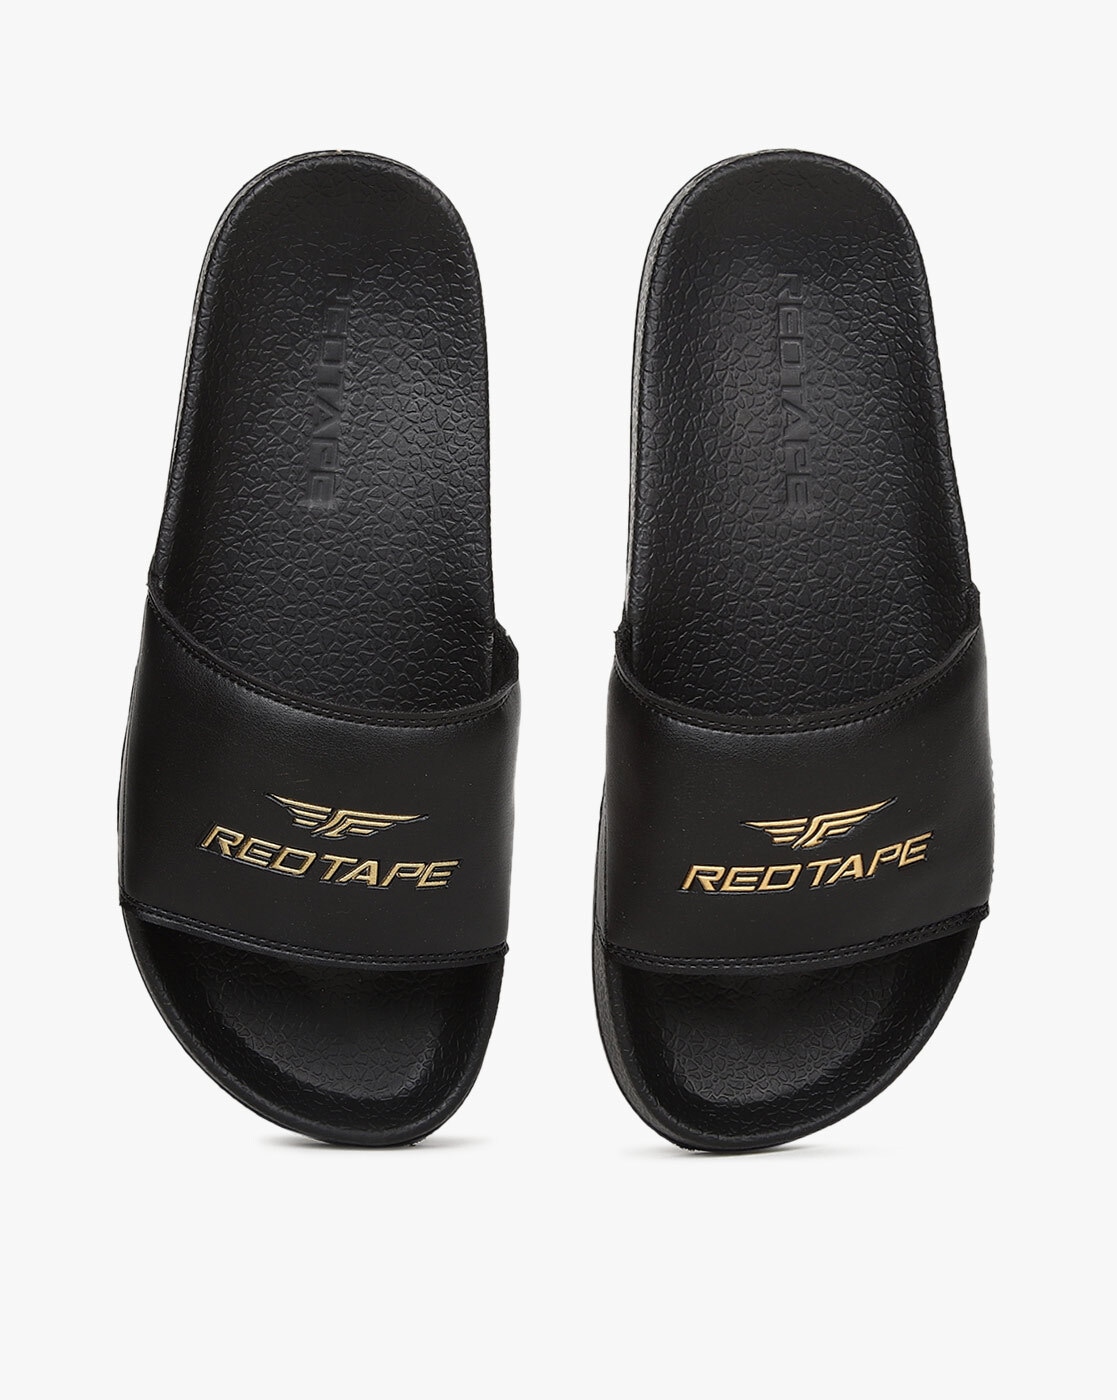 Red Tape, Men'S Fashion Sandals, Brown, 44 EU price in UAE | Amazon UAE |  kanbkam